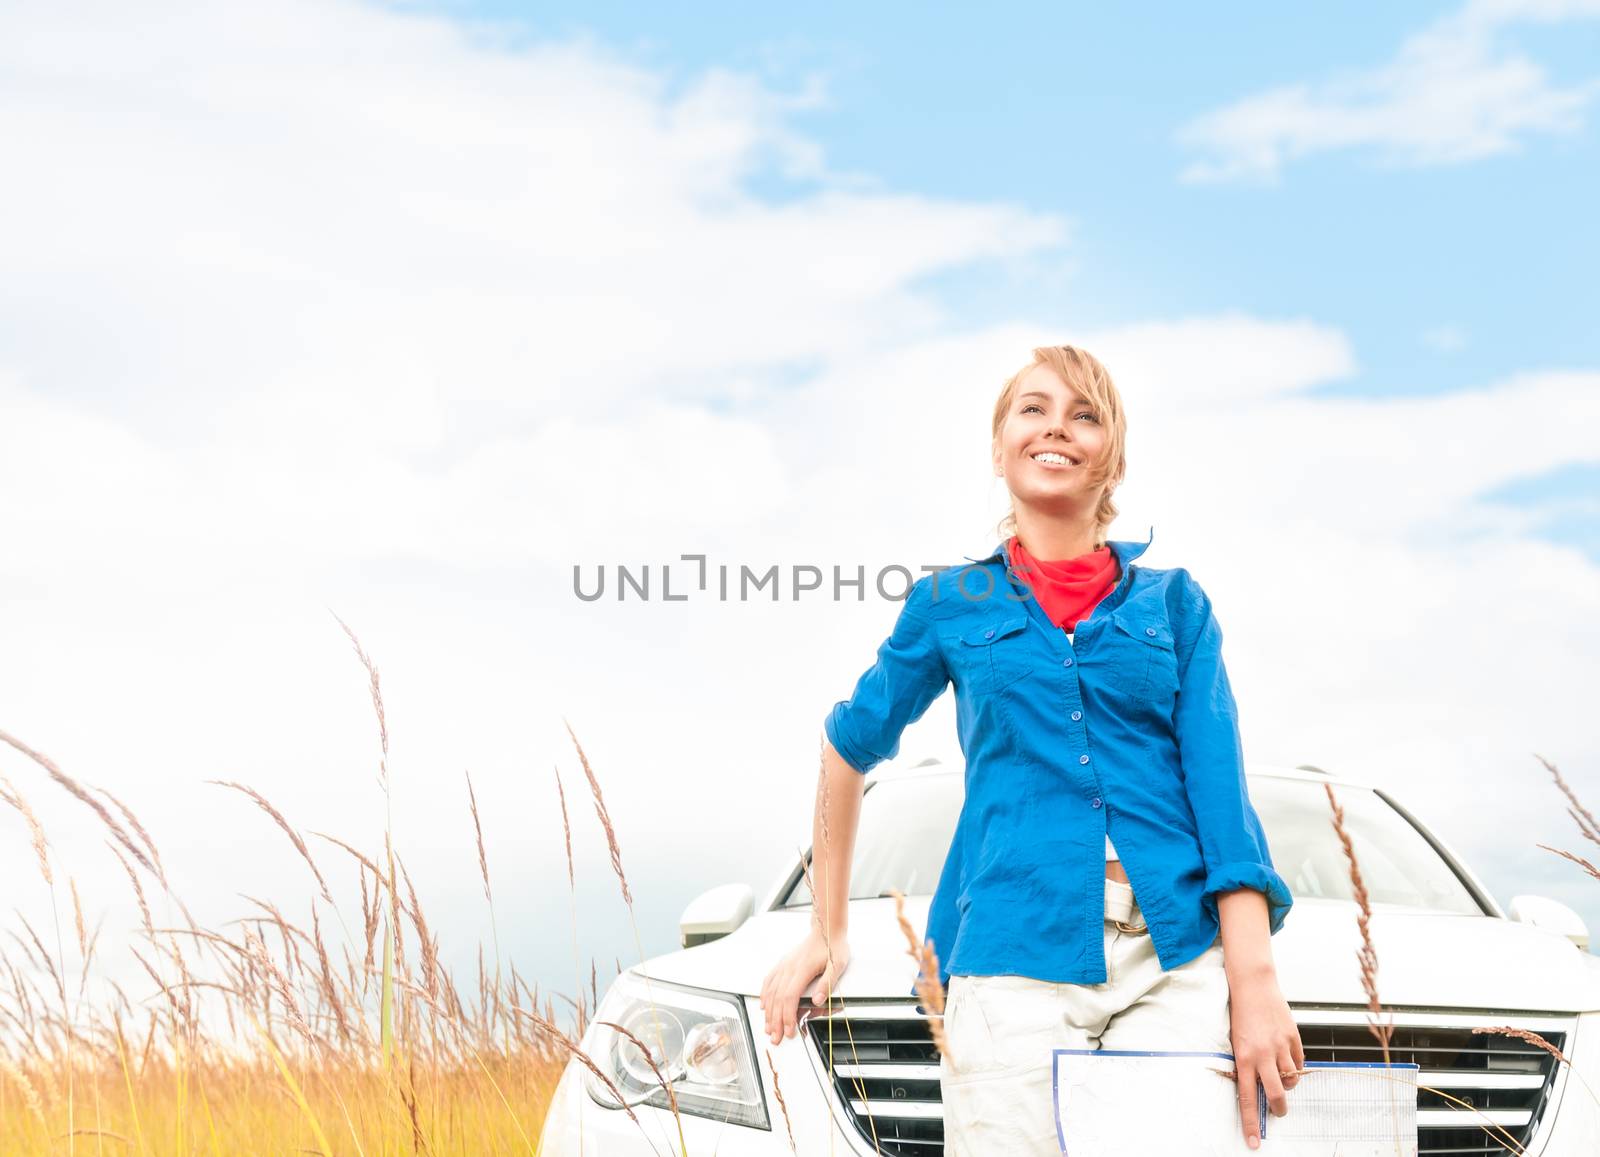 Tourist woman in front of car in summer field. by Yolshin